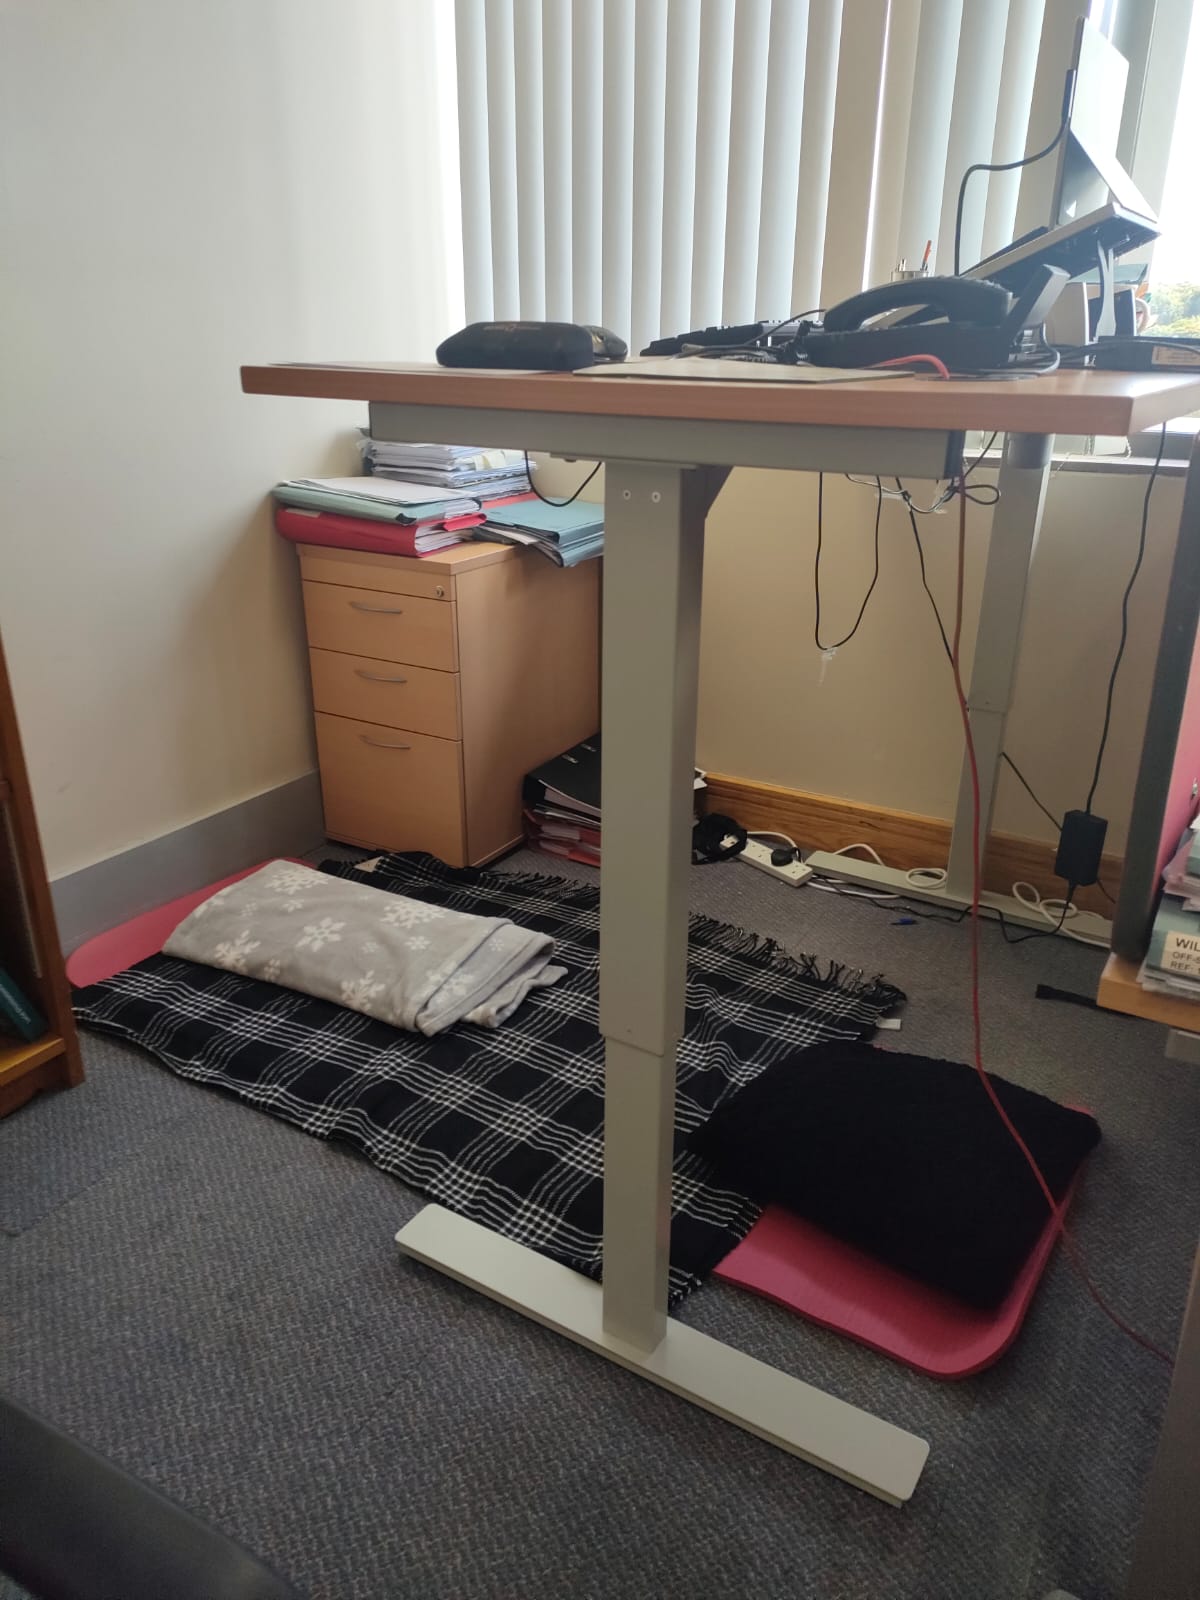 Standing desk with yoga mat below